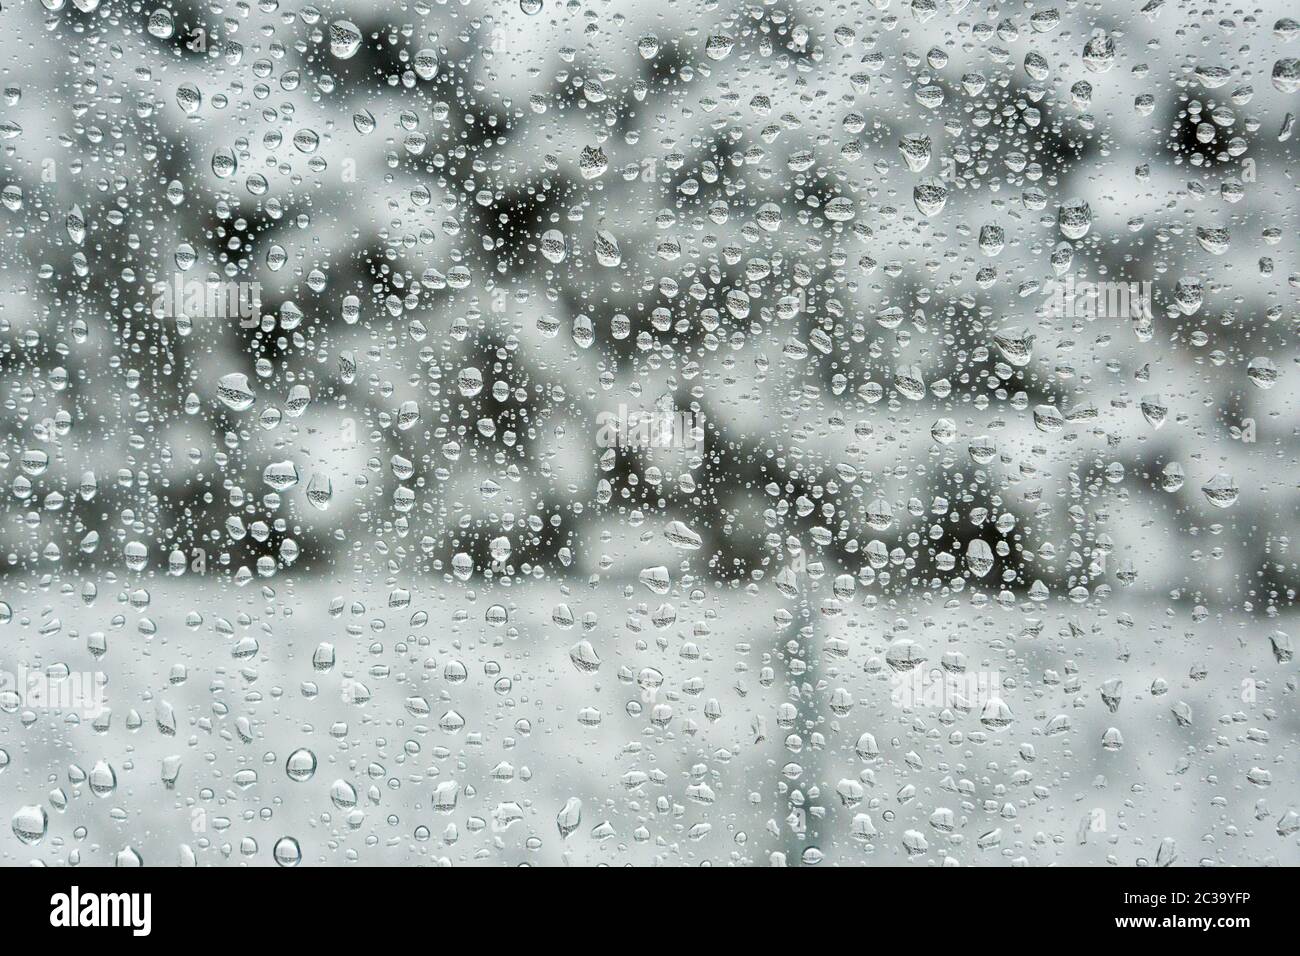 Waterdrops on Frozen Window Stock Photo